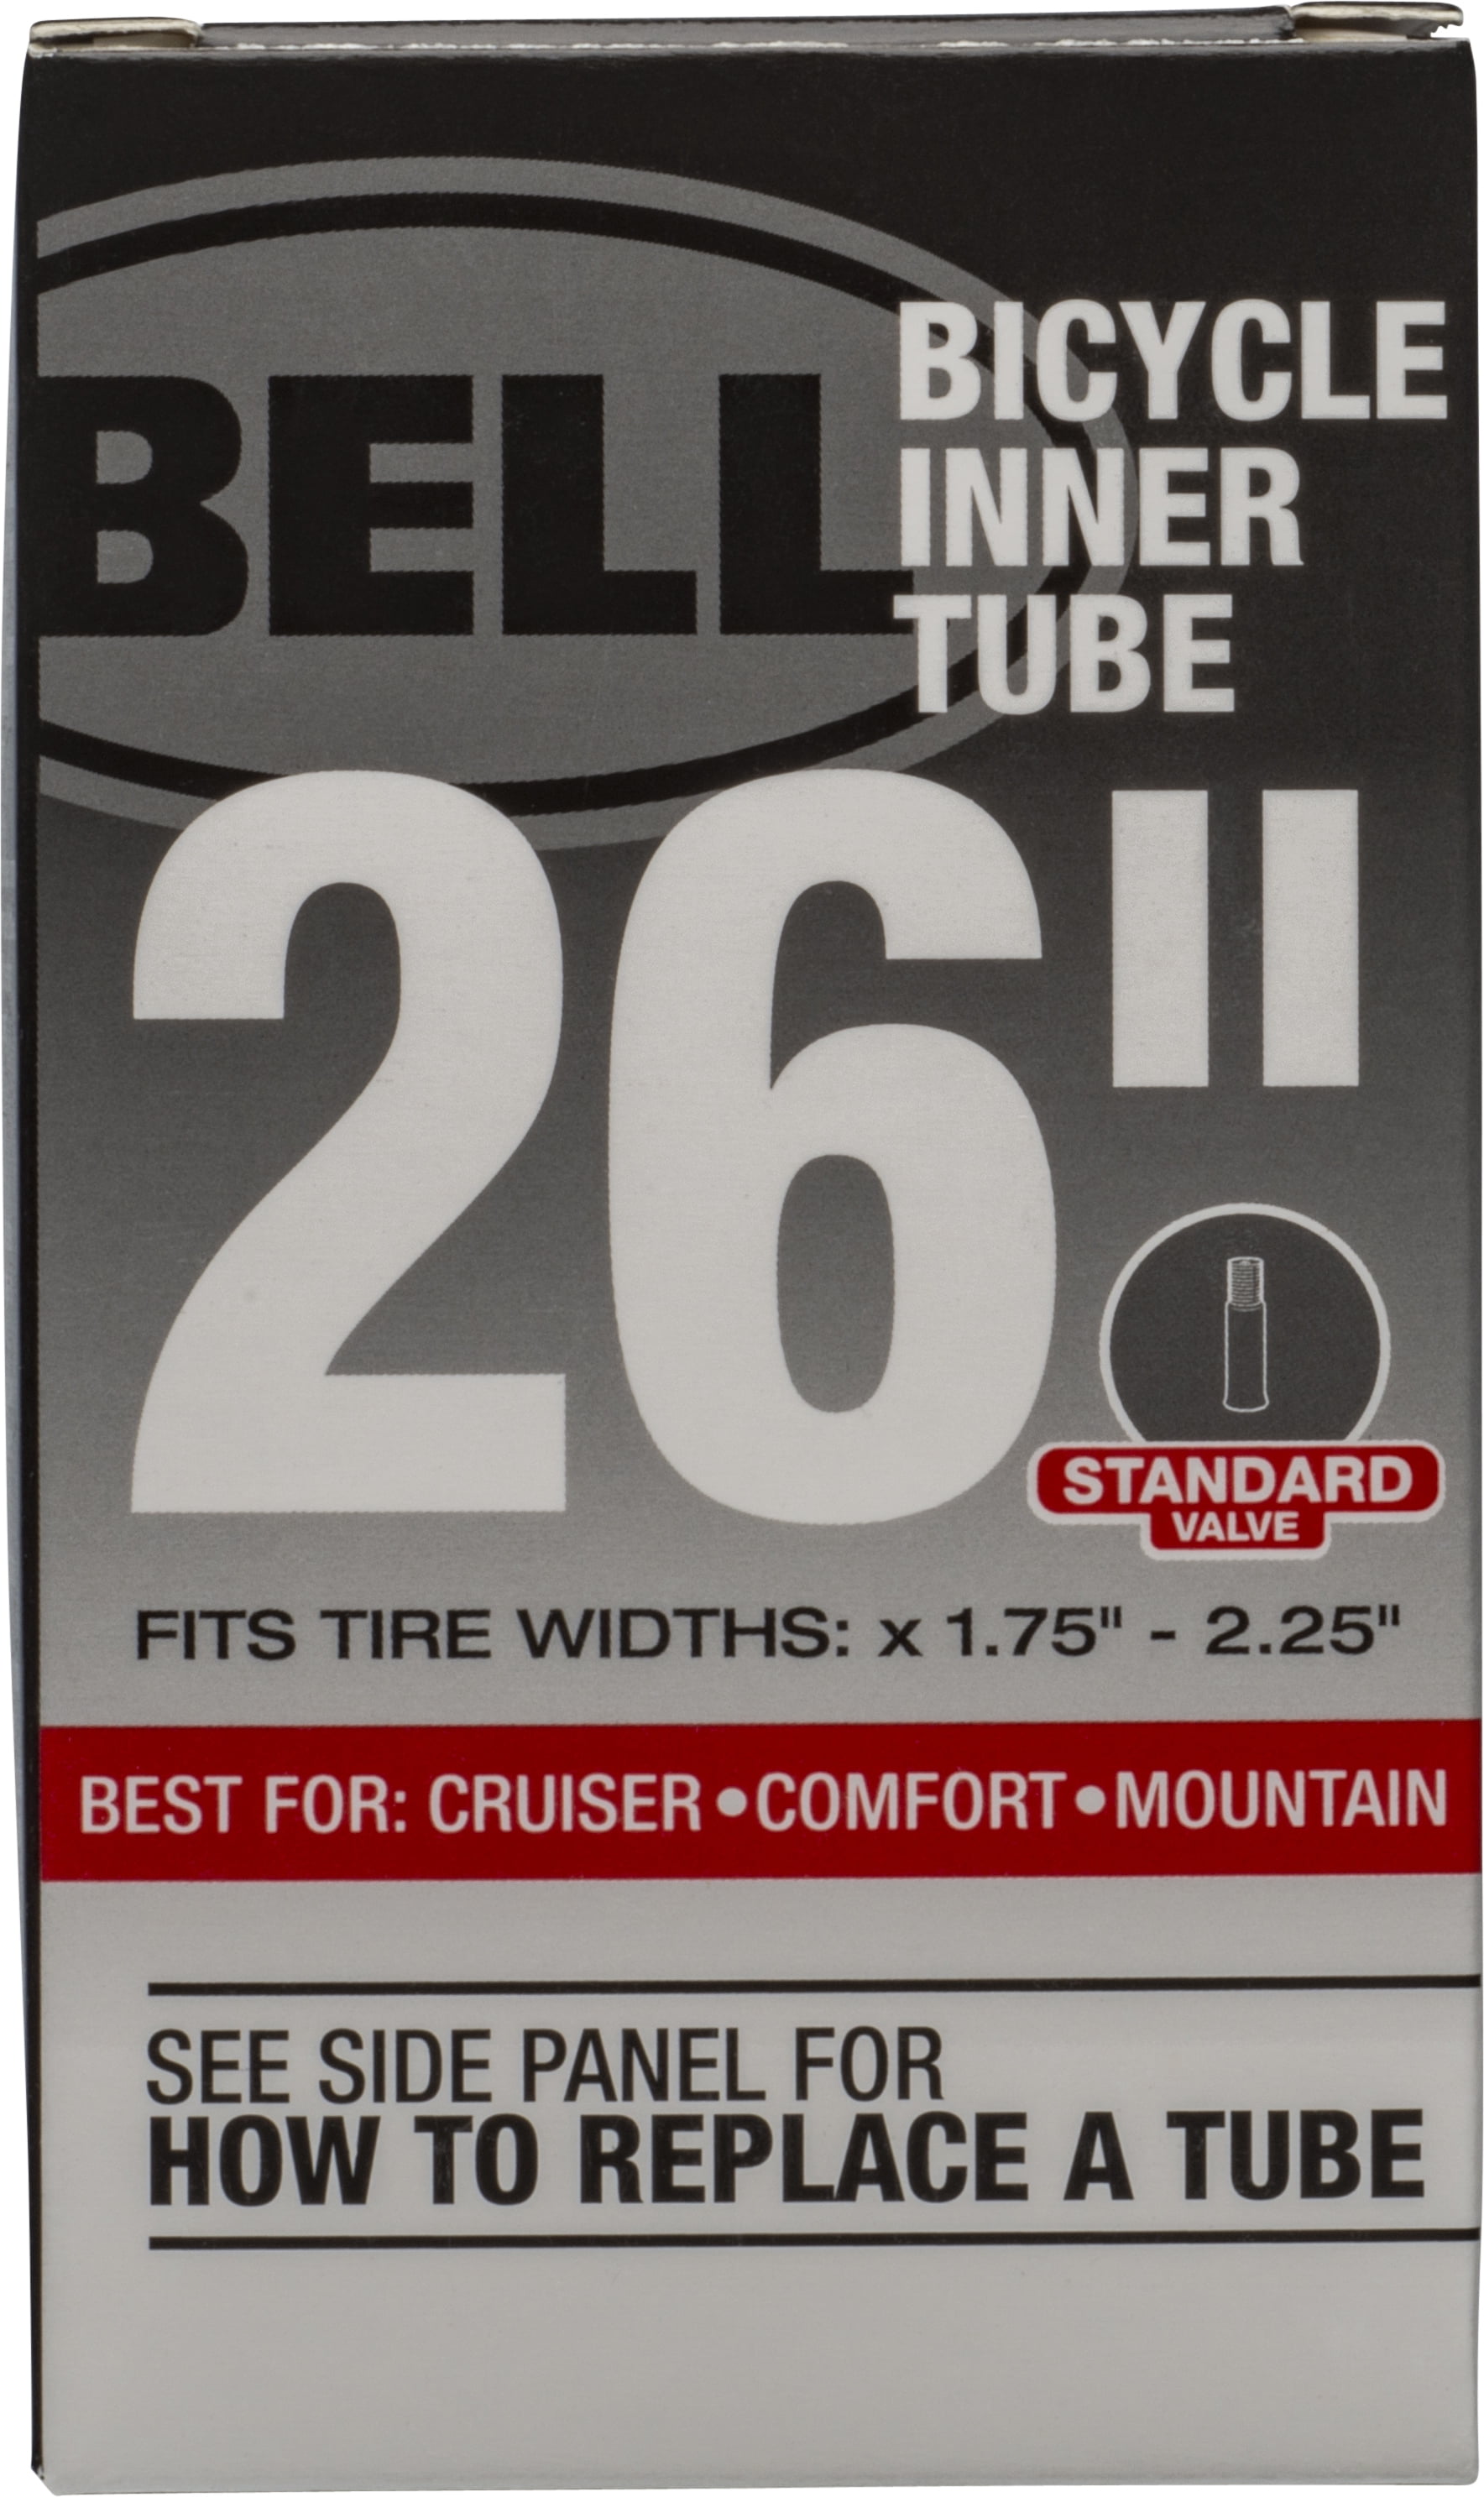 NEW CYCLE INNER TUBES 2 PACK 12 x 1.75/2.125 SCHRADER VALVE BIKE MTB 12"